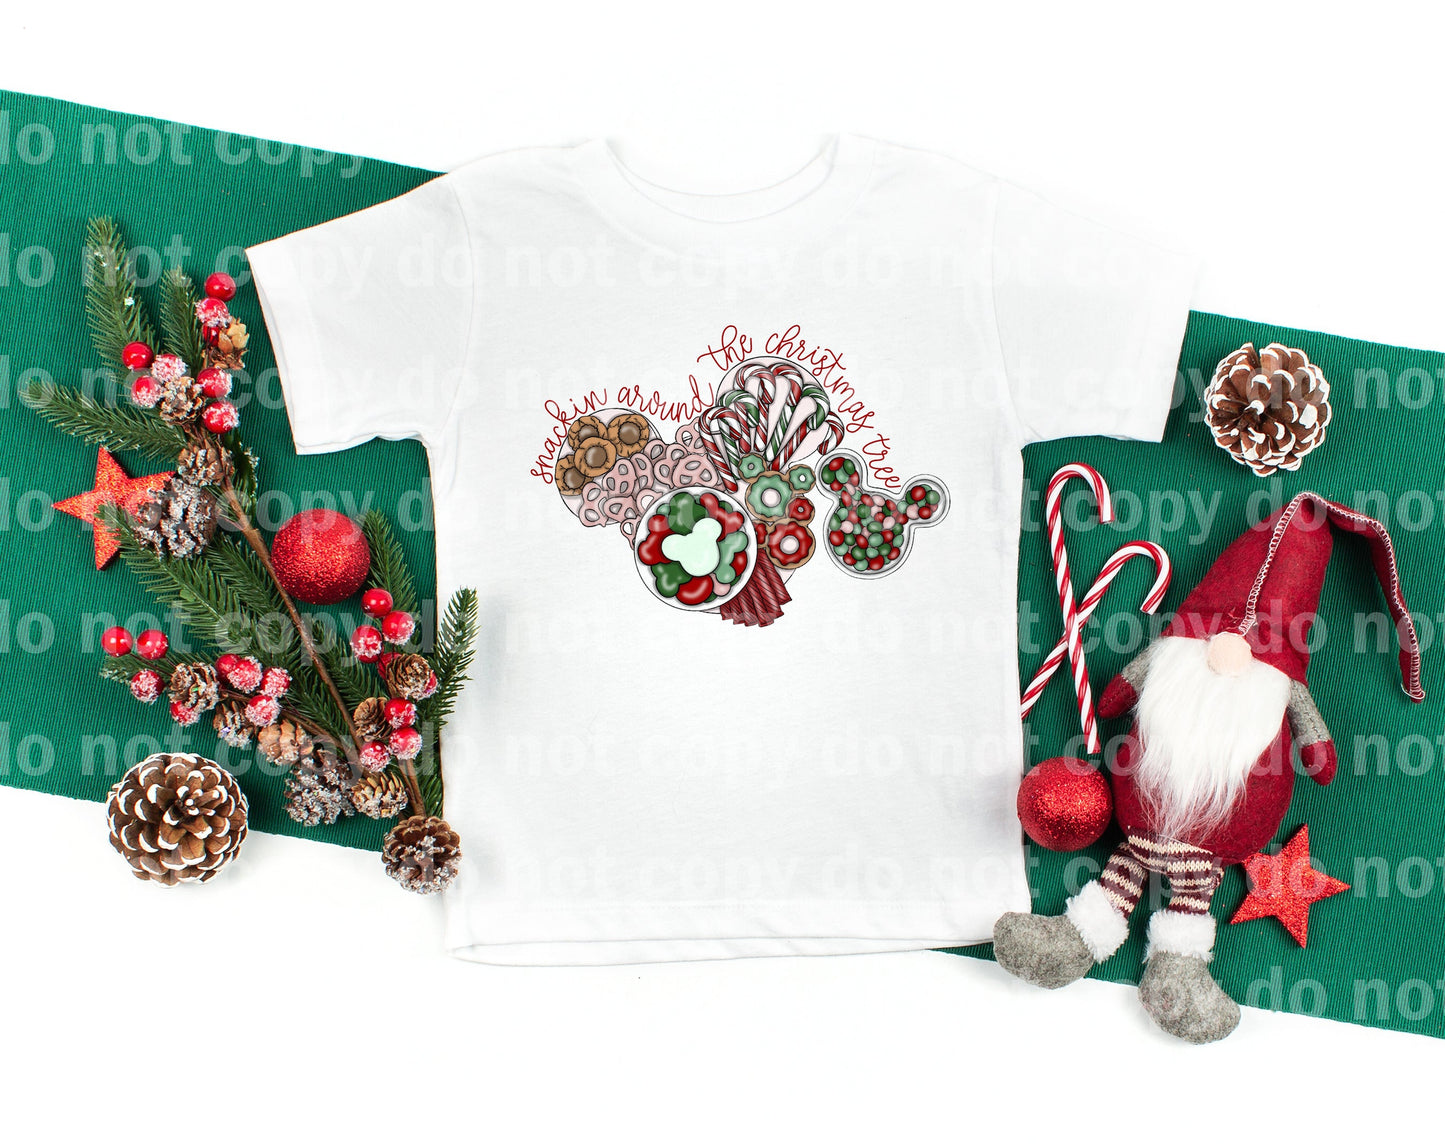 Snackin Around The Christmas Tree Dream Print o Impresión por sublimación